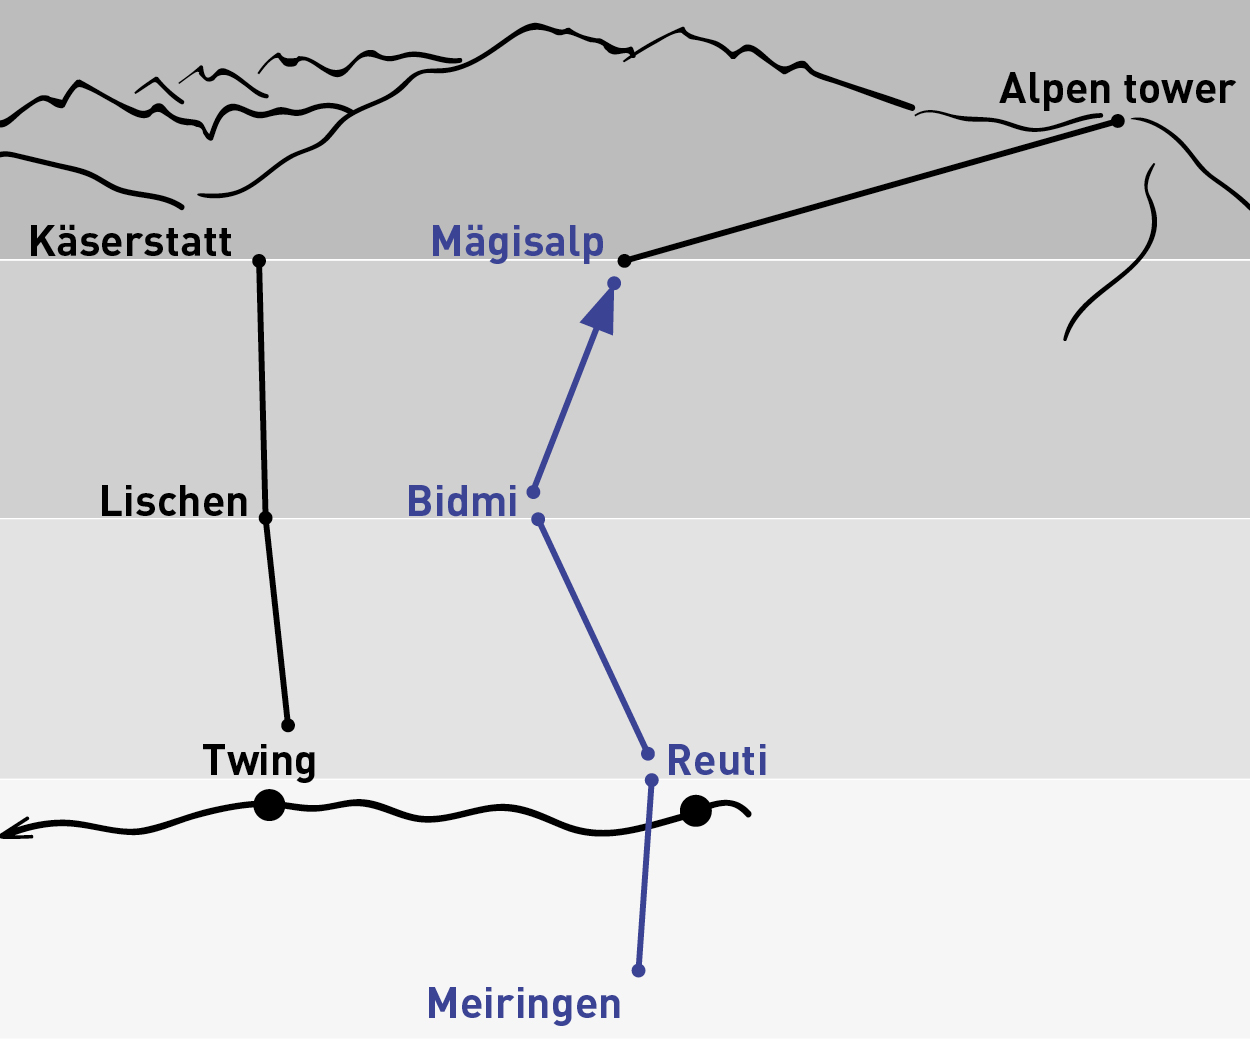 Meiringen – Mägisalp | Einfache Fahrt